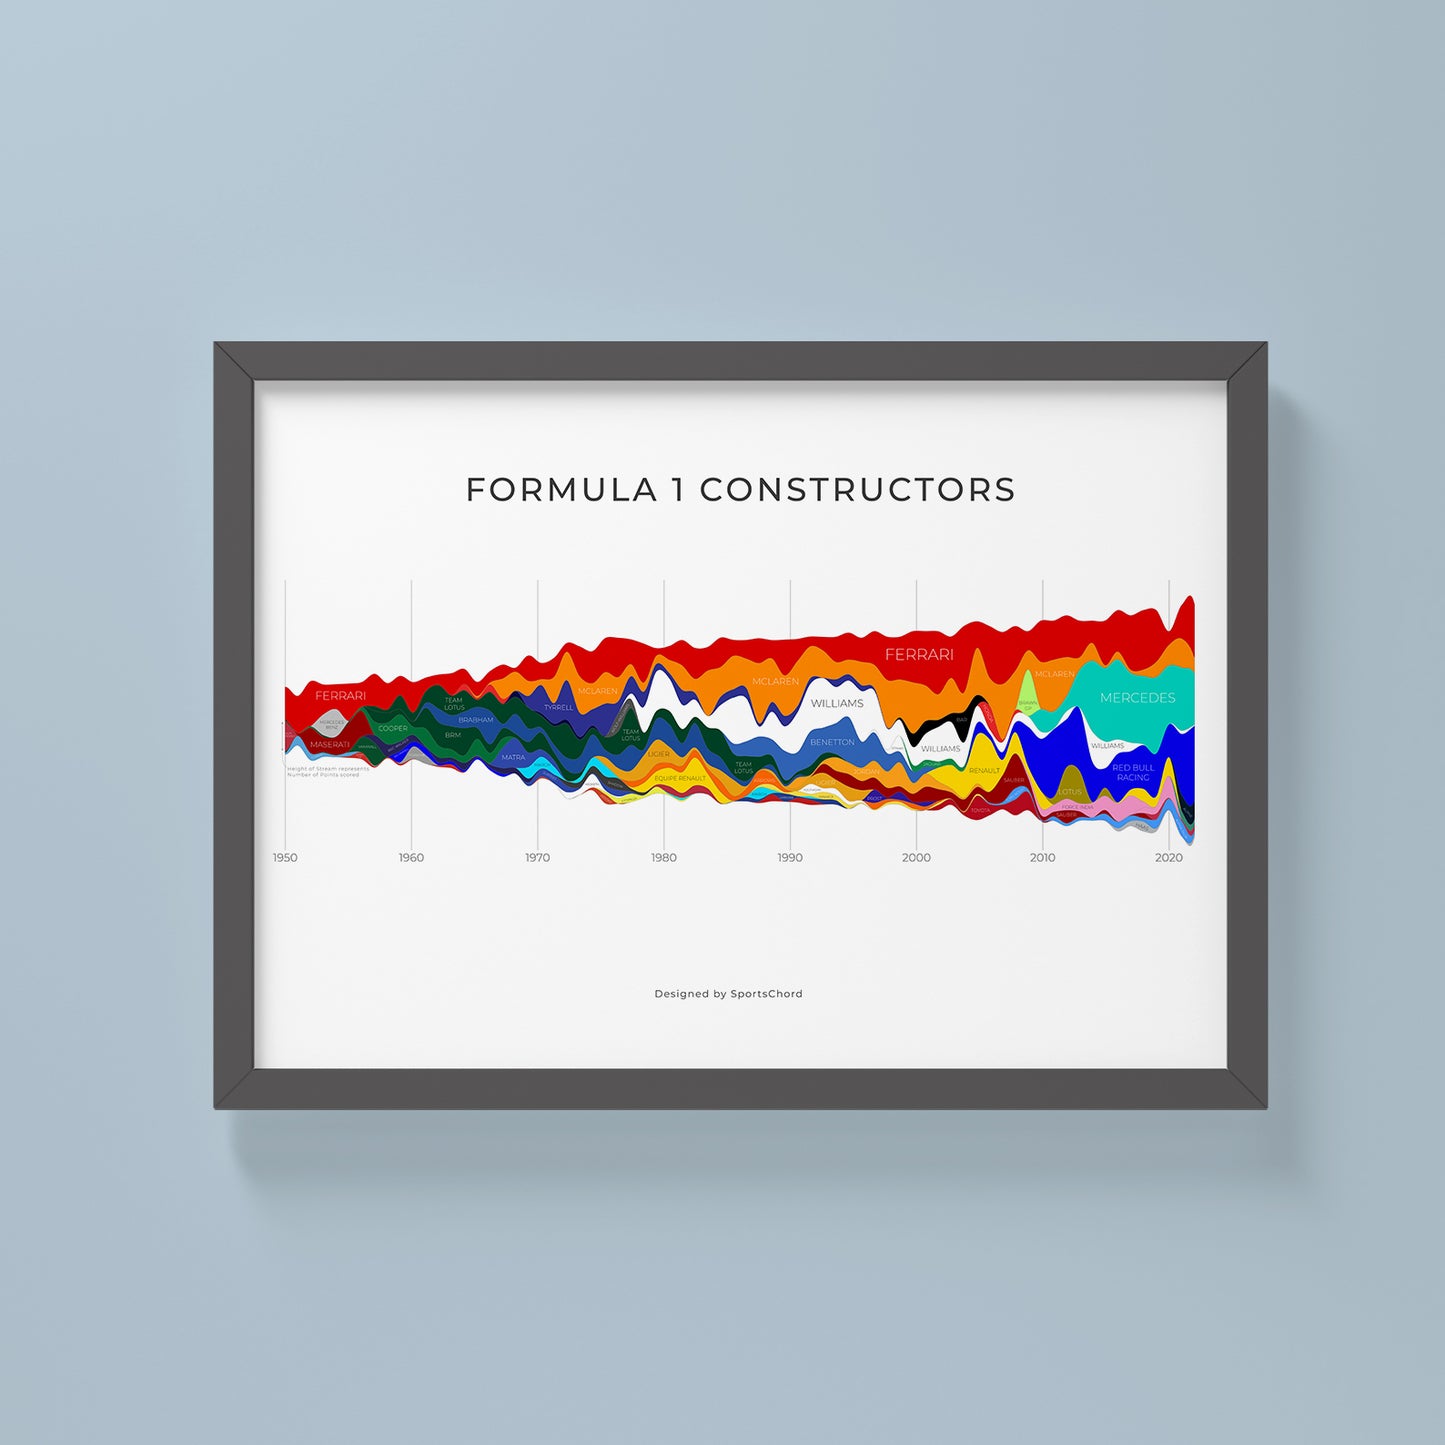 Formula 1 Constructors